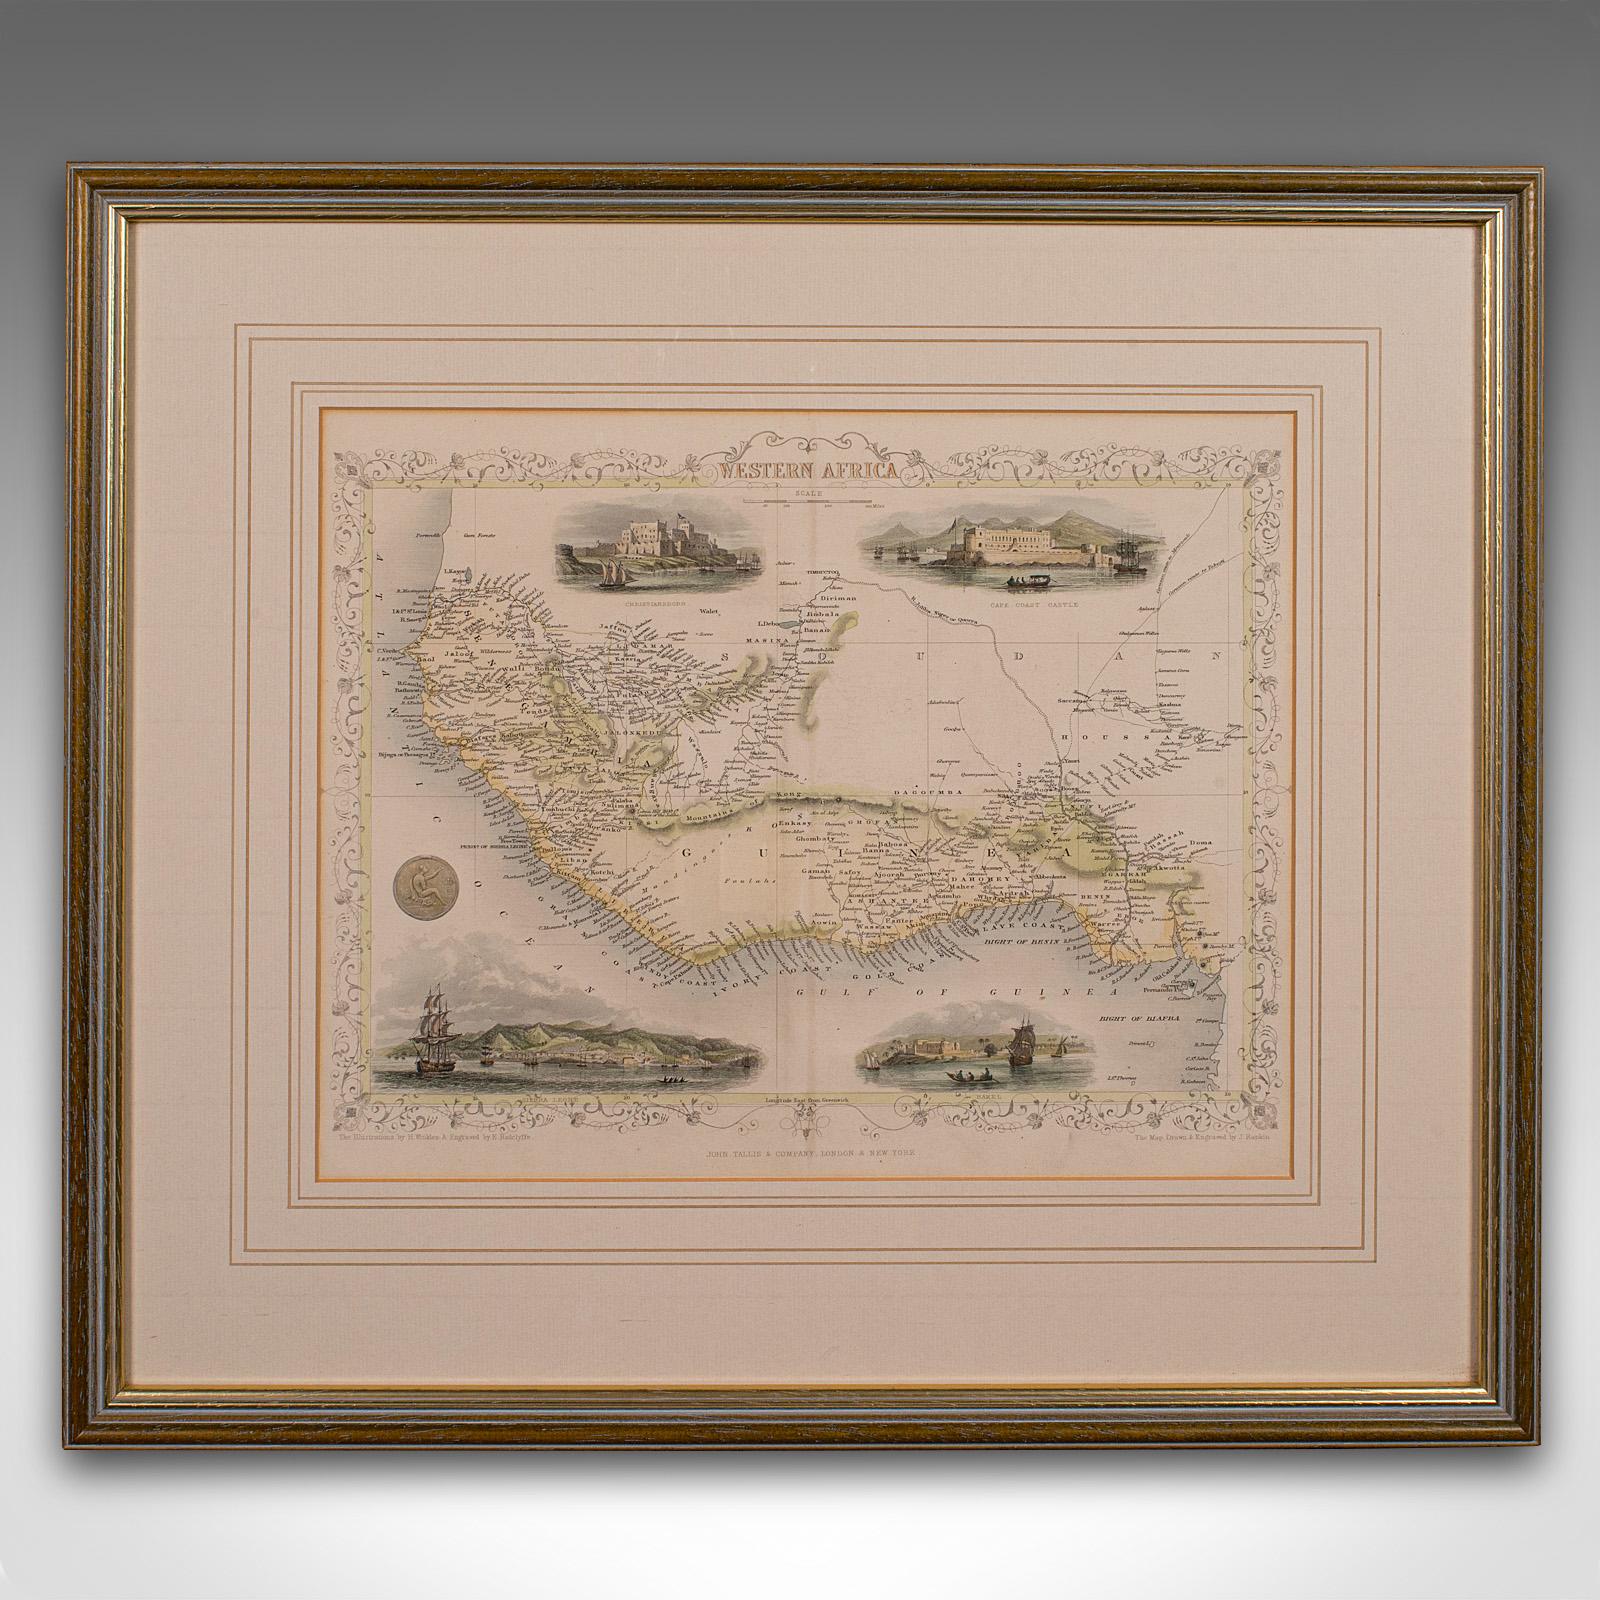 Il s'agit d'une carte lithographique ancienne de l'Afrique de l'Ouest. Gravure d'atlas anglaise encadrée d'intérêt cartographique par John Rapkin, datant du début de la période victorienne et plus tard, vers 1850.

John Rapkin était considéré comme